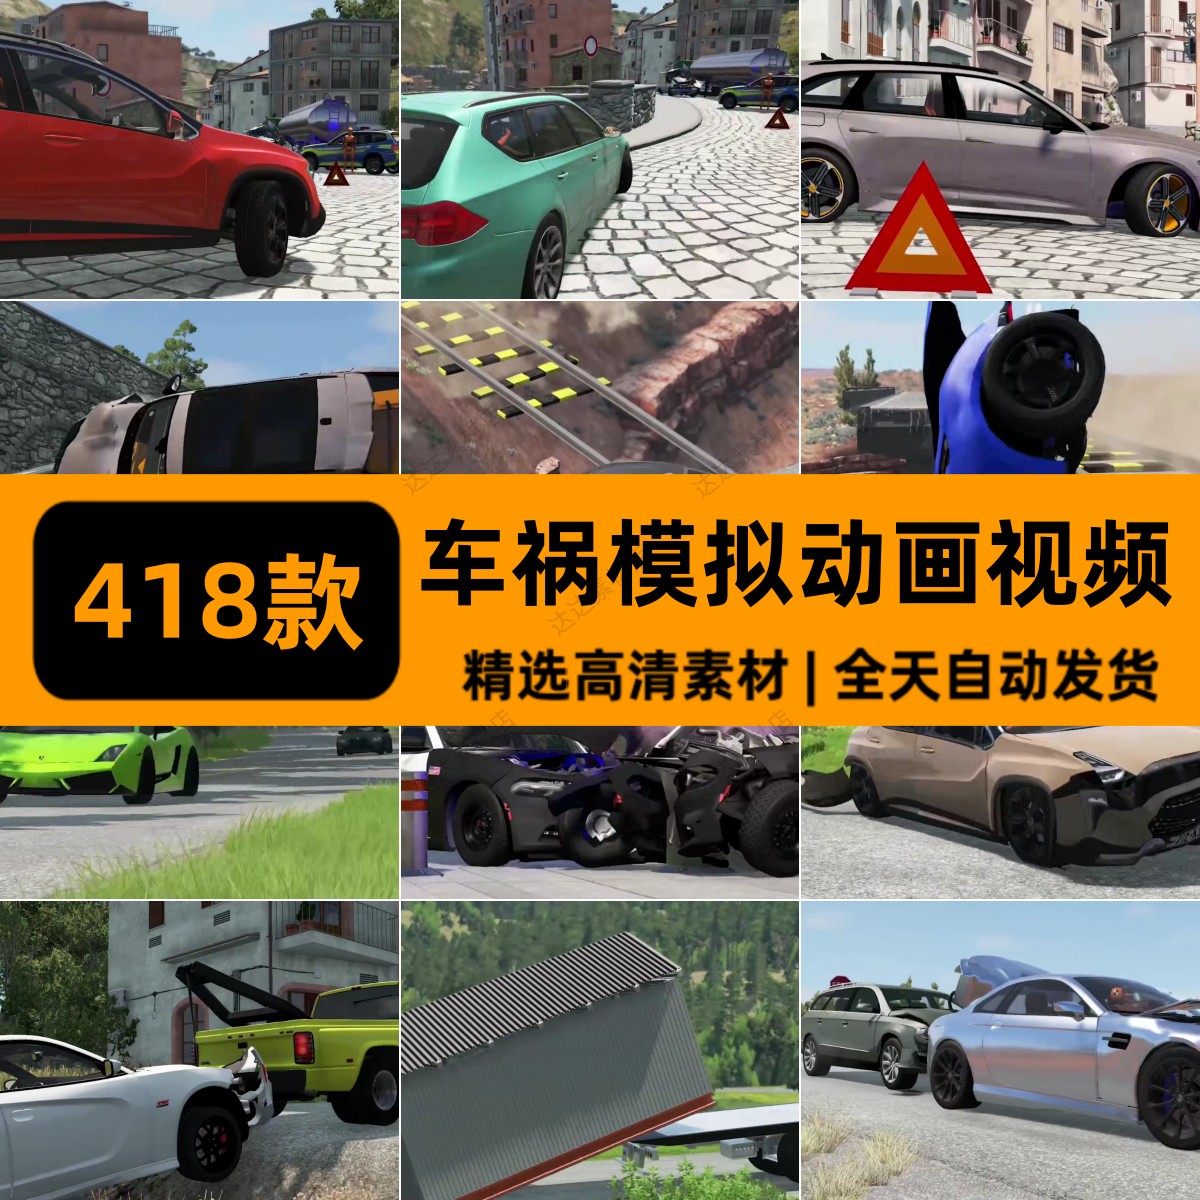 高清车祸模拟车辆碰撞横屏解压游戏动画视频国外小说推文素材引流